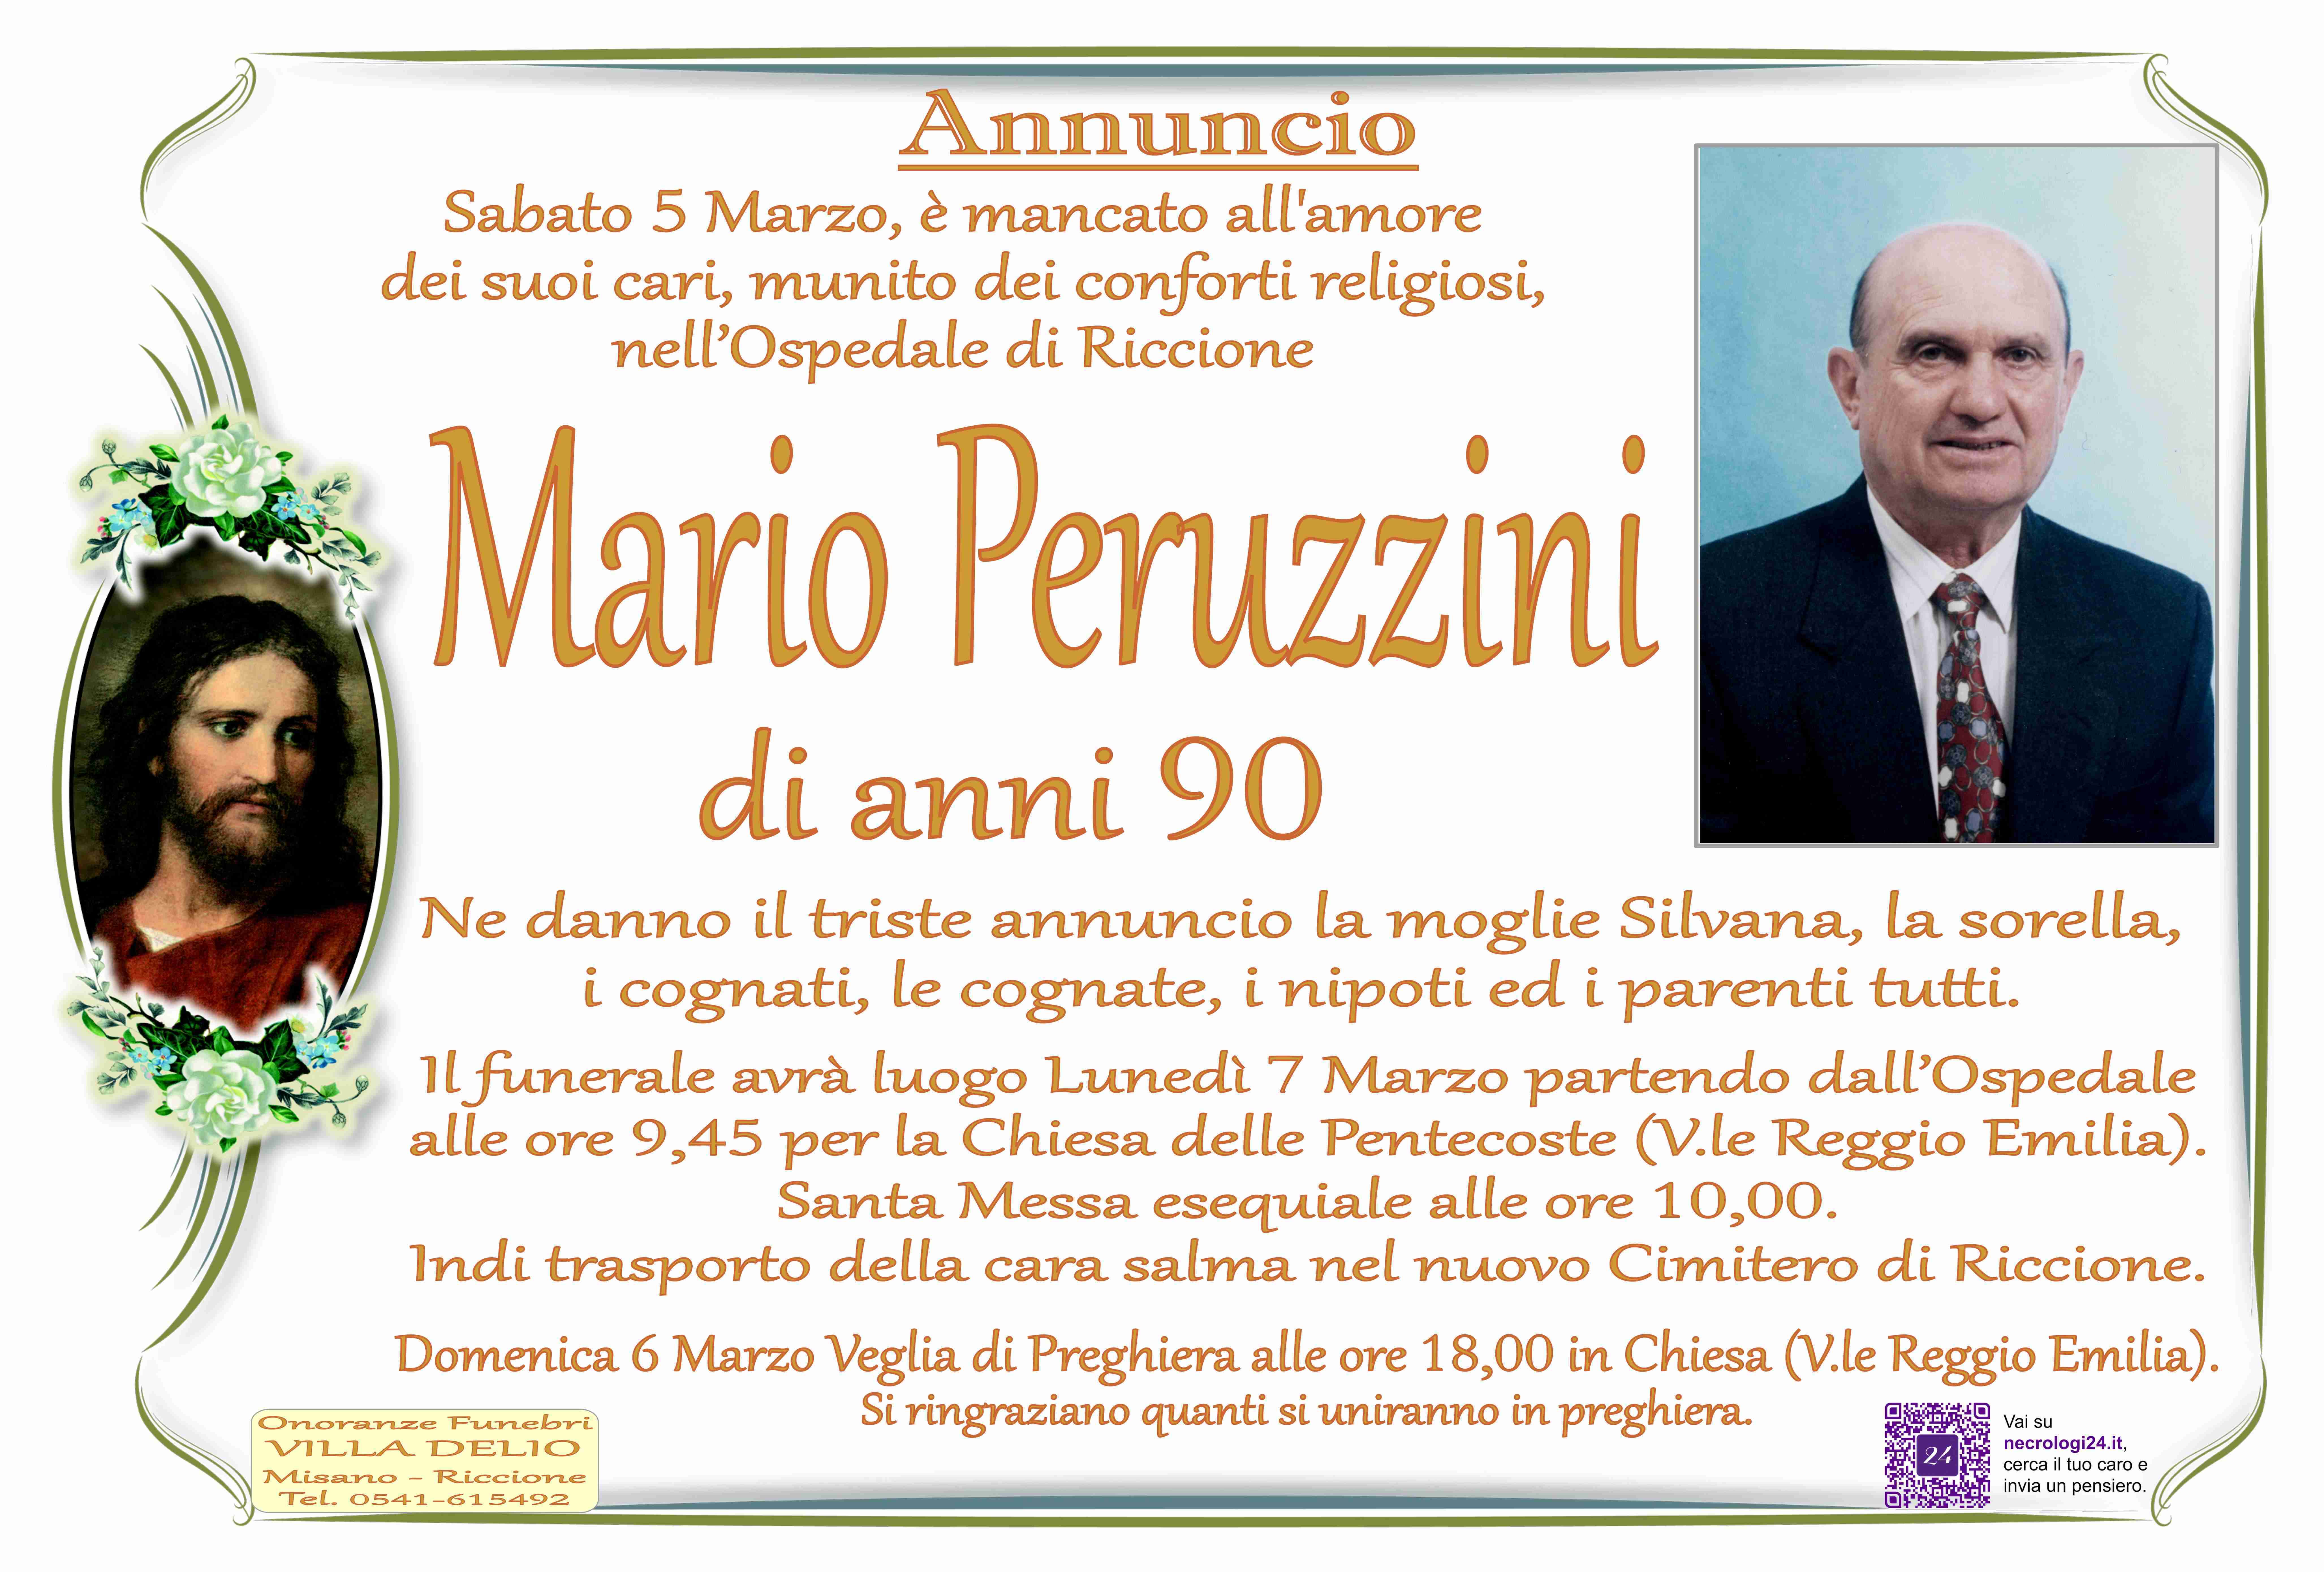 Mario Peruzzini